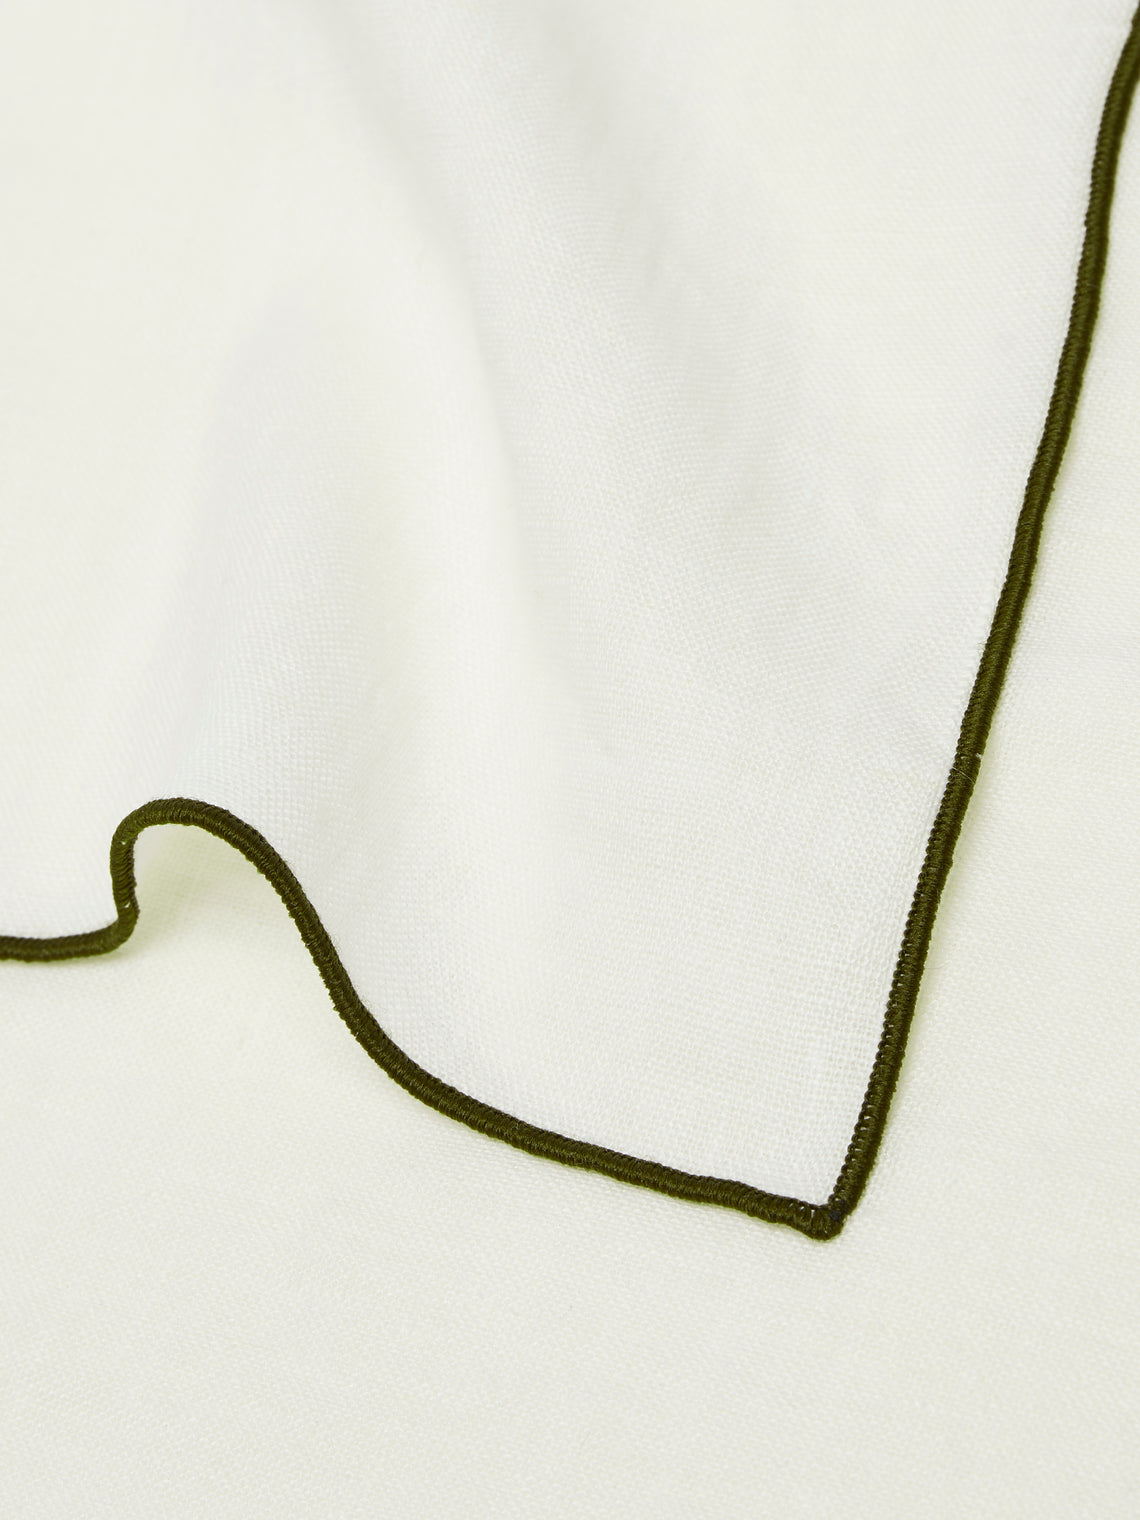 Madre Linen - Contrast Edge Linen Napkin (Set of 4) - White - ABASK